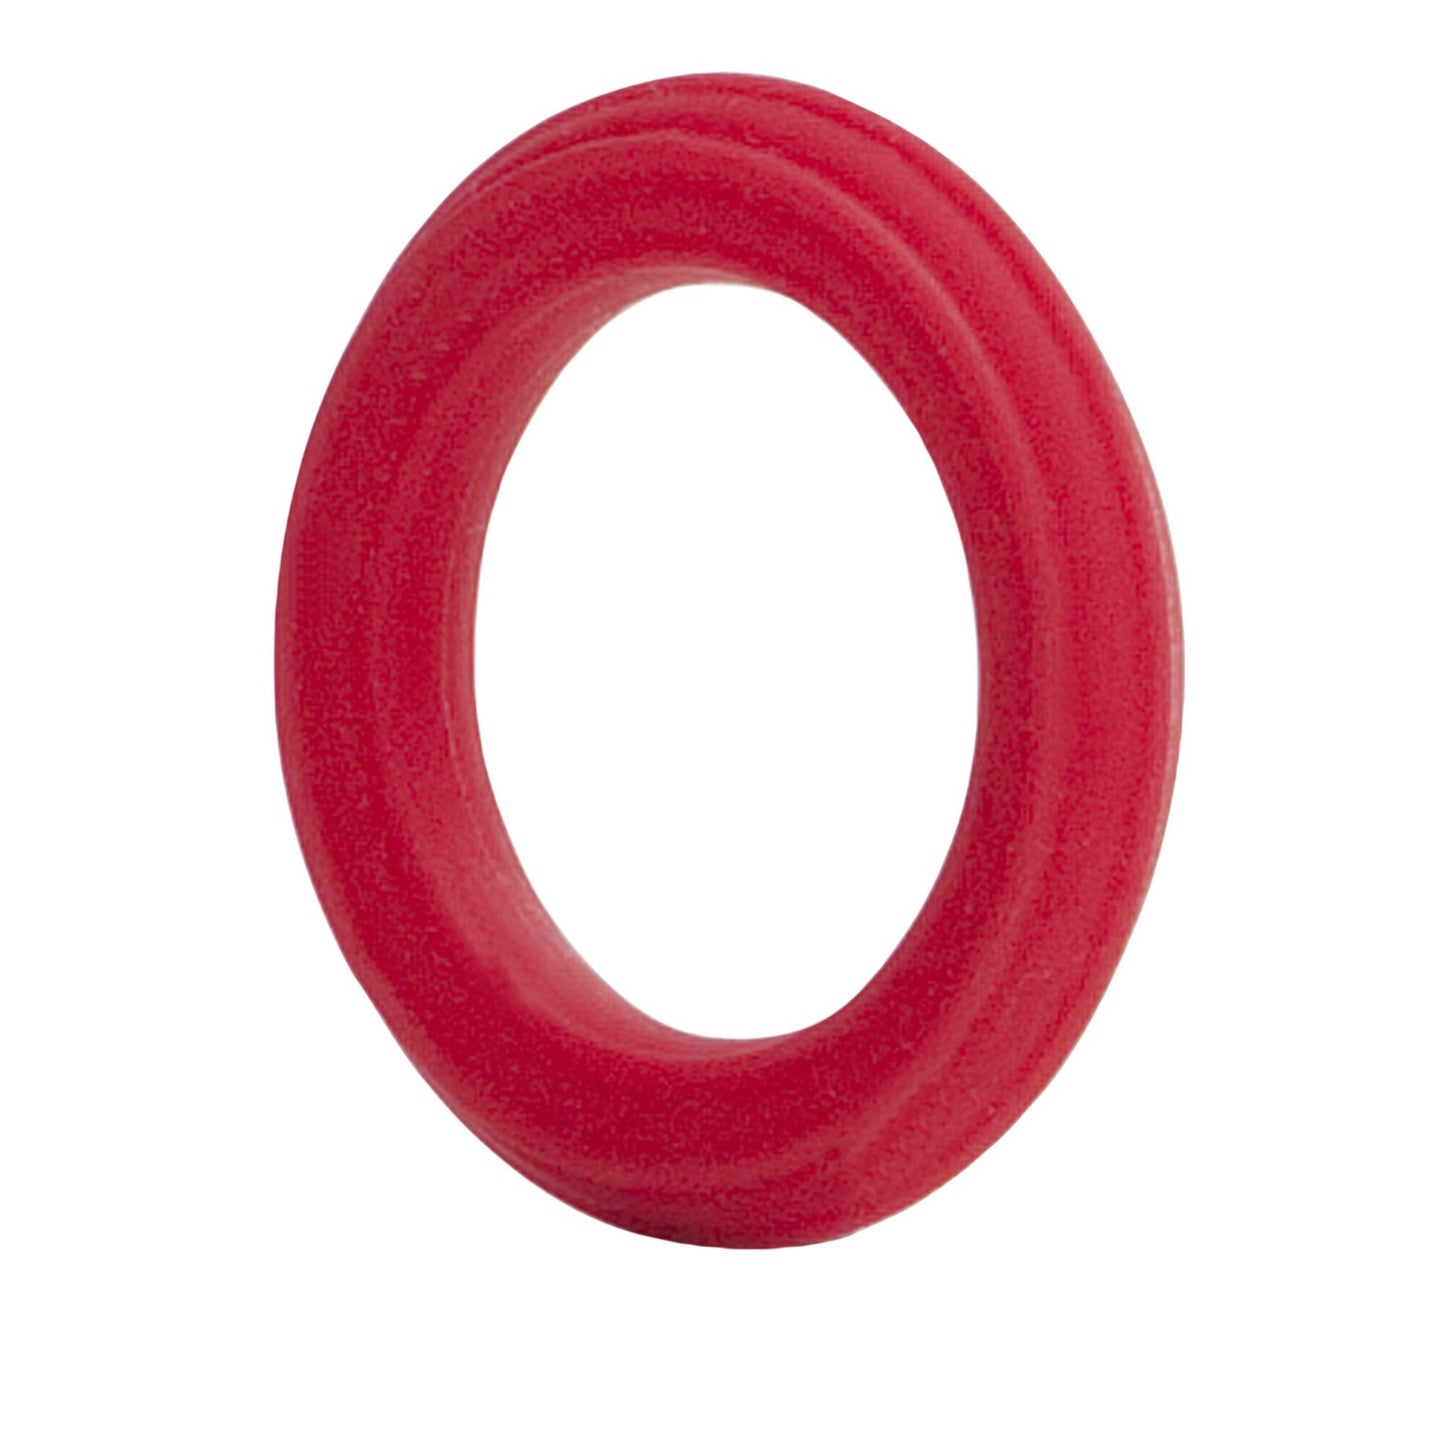 Caesar Silicone Ring